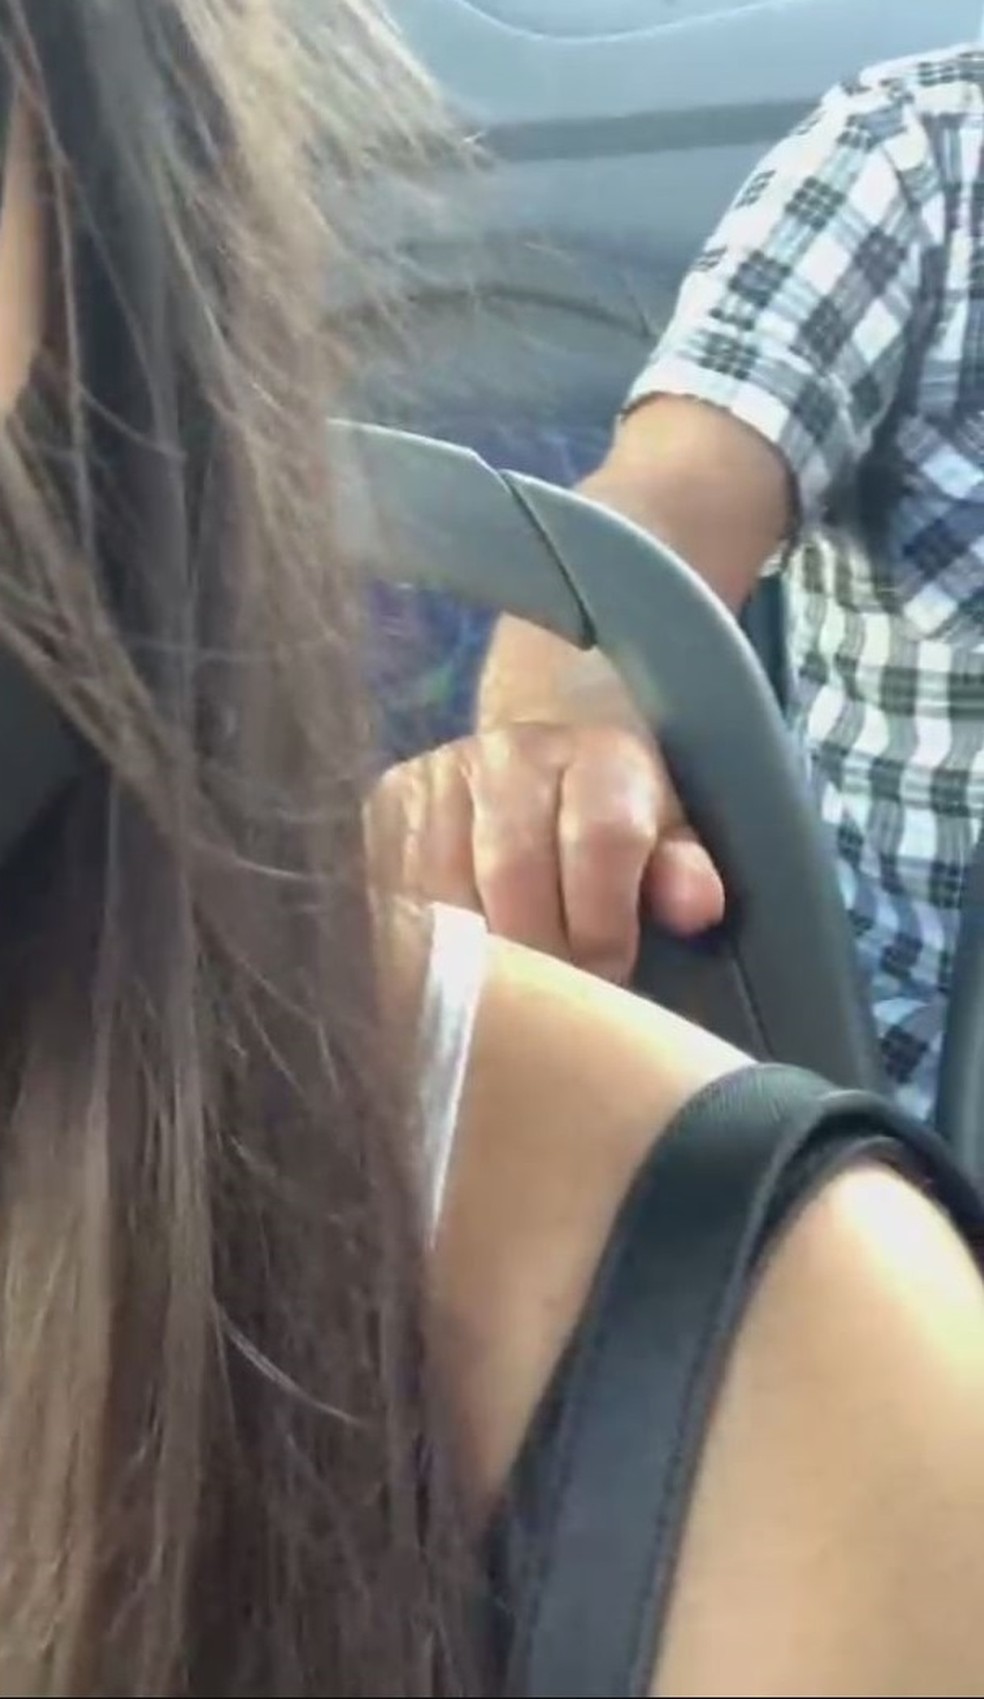 Jovem grava momento em que é vítima de importunação sexual em autocarro no Brasil | Vídeo